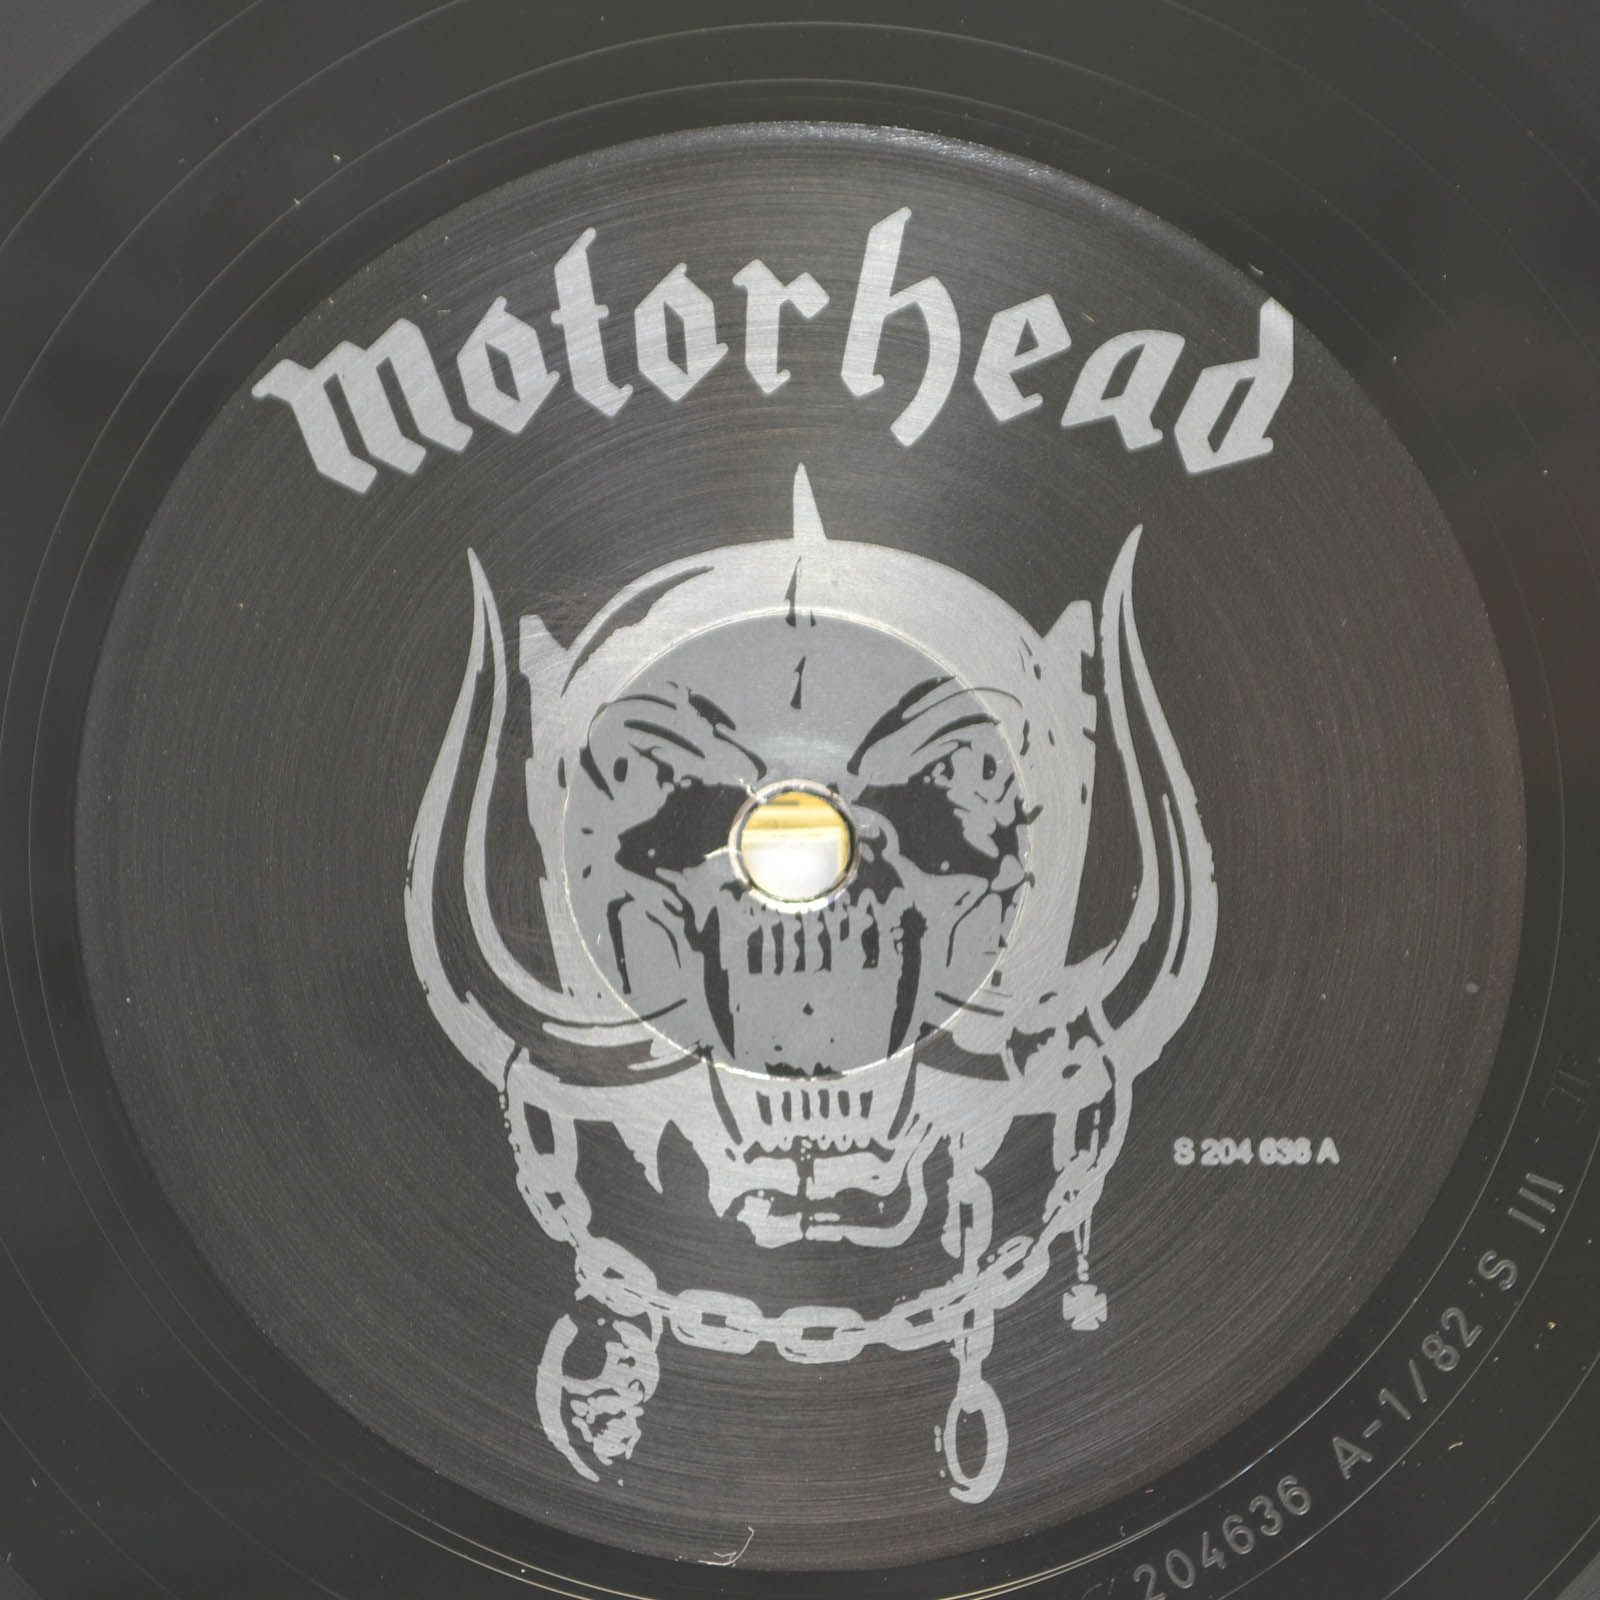 Motörhead — Iron Fist, 1982